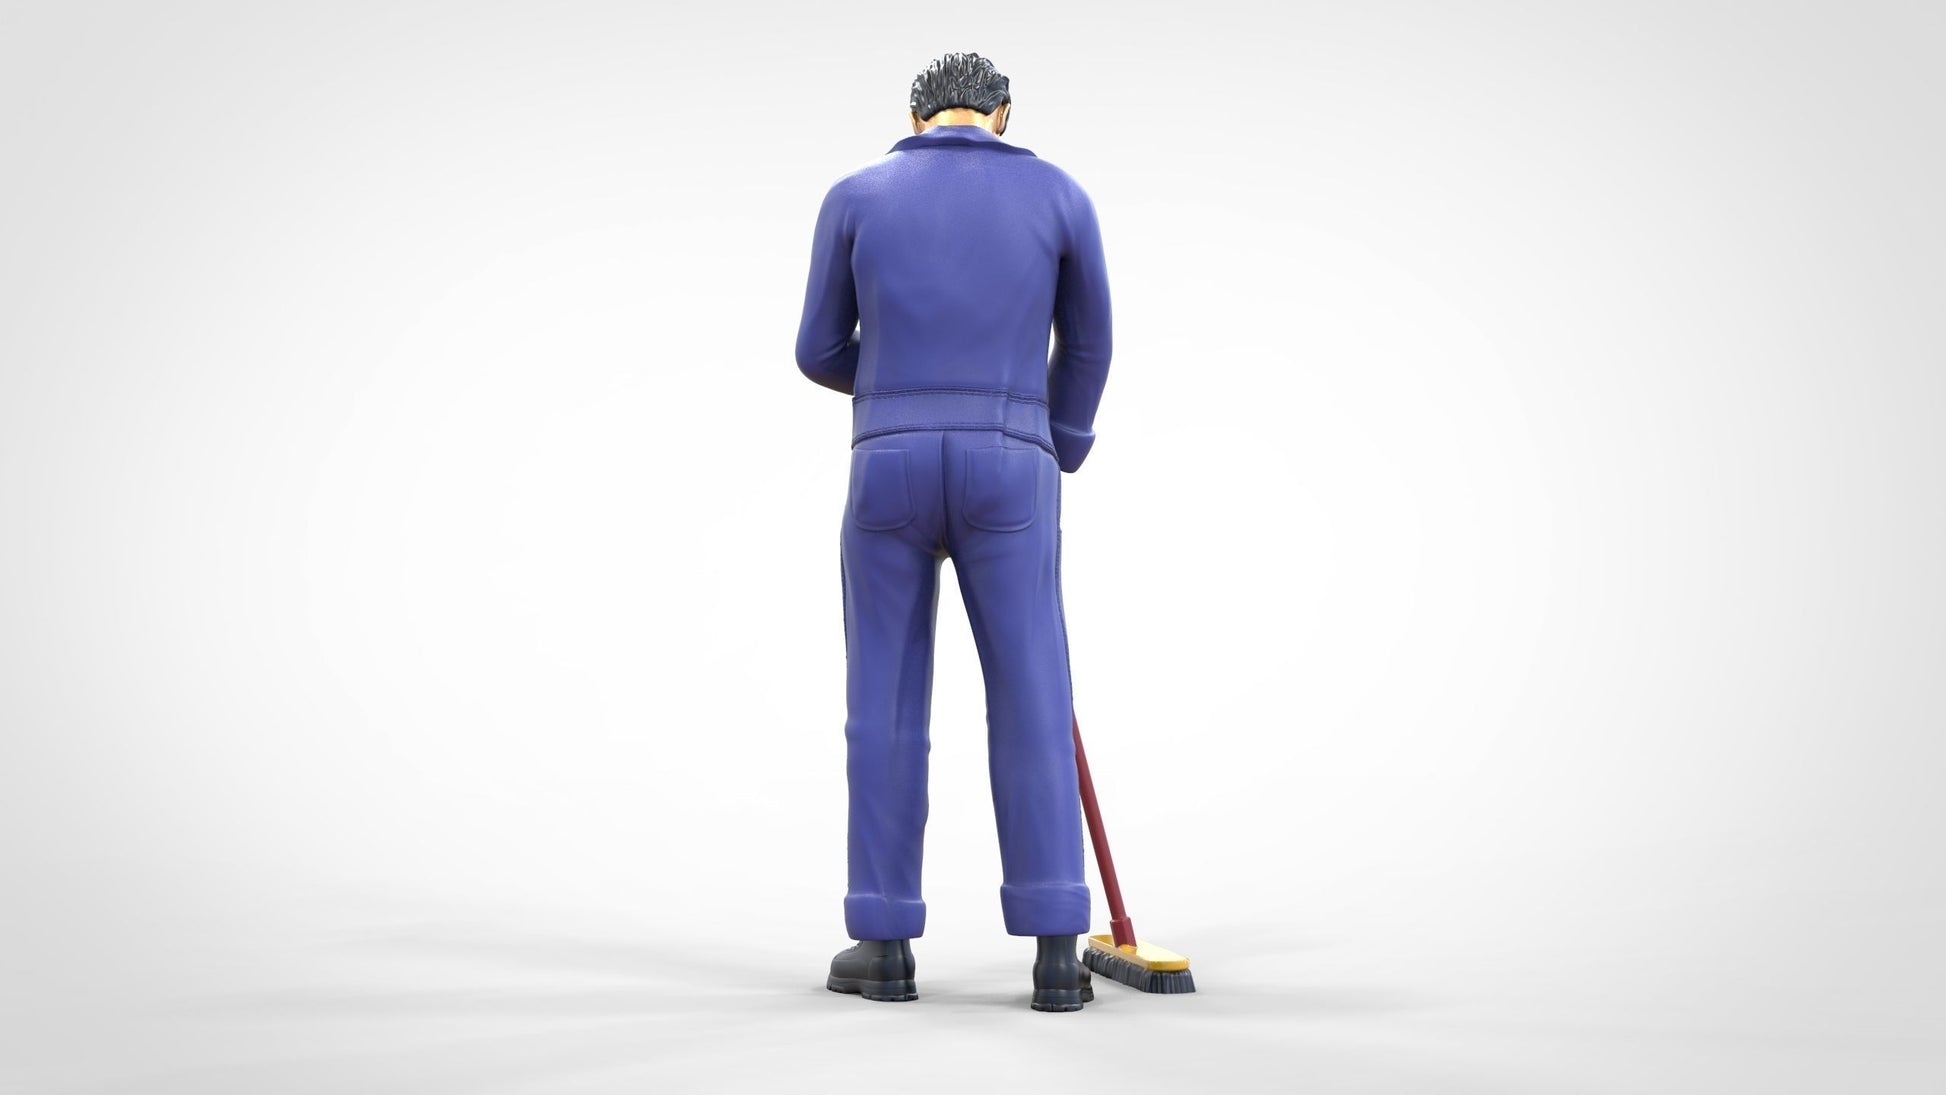 Produktfoto  0: Hausmeister oder Reinigungskraft: Mann mit Besen in Overall